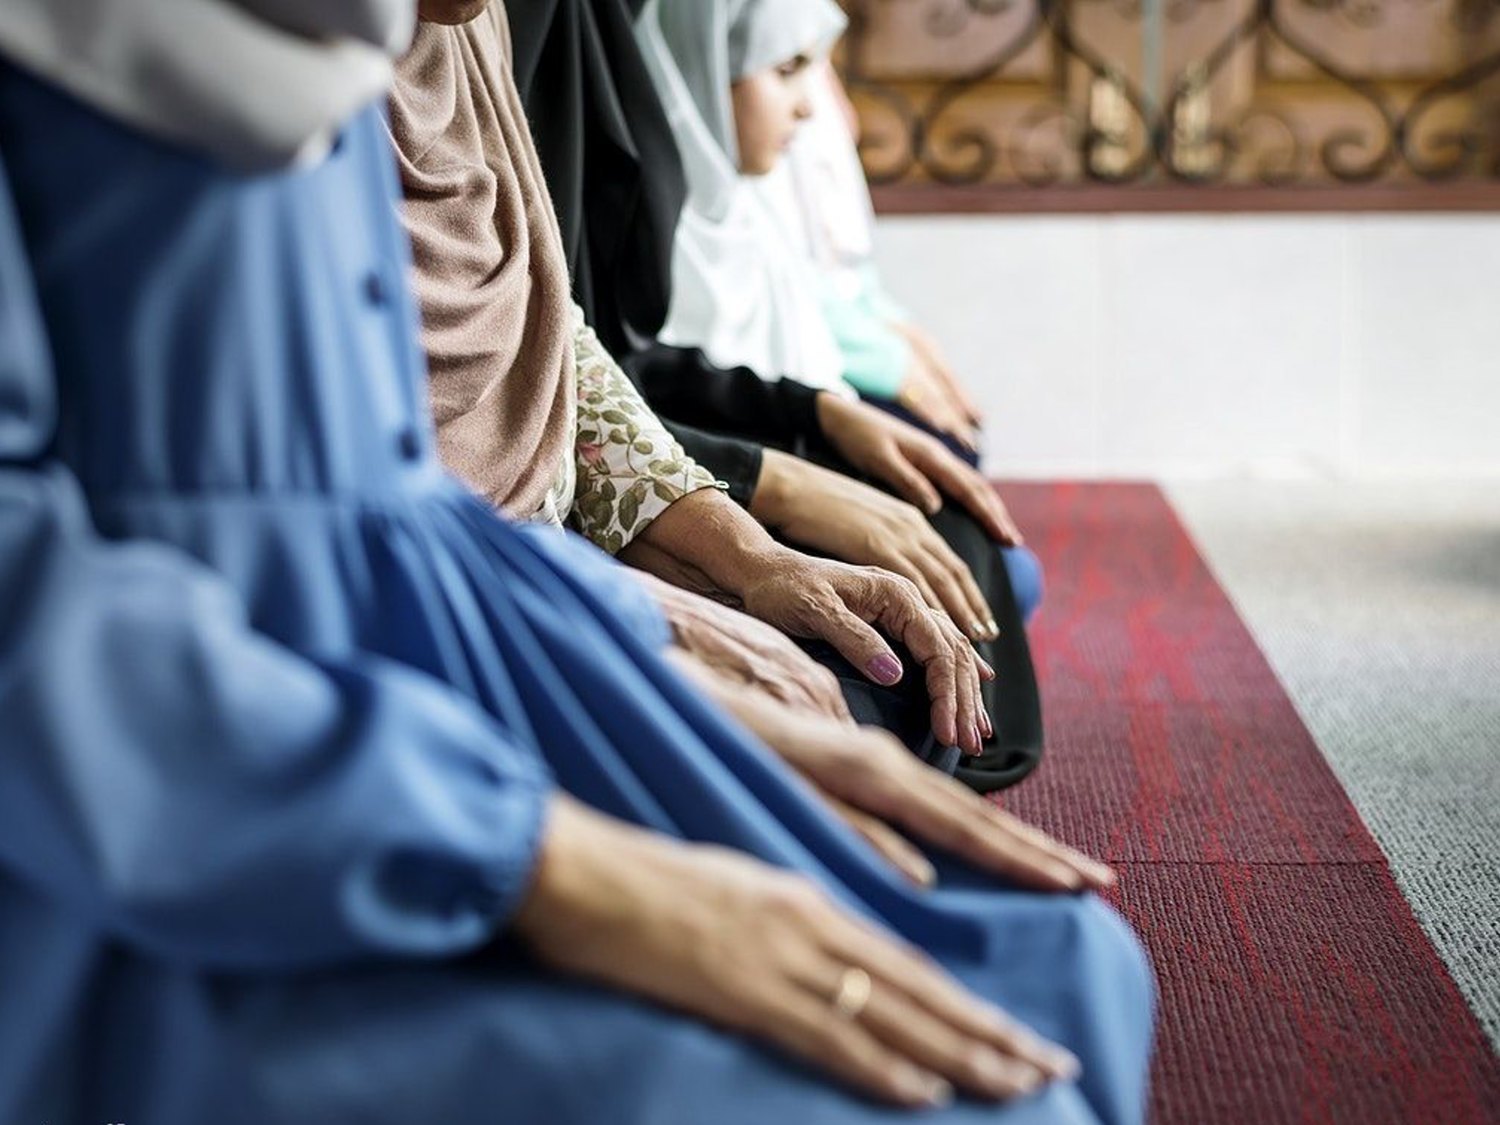 La menstruación durante el Ramadán, a debate: ¿impureza o normalidad?